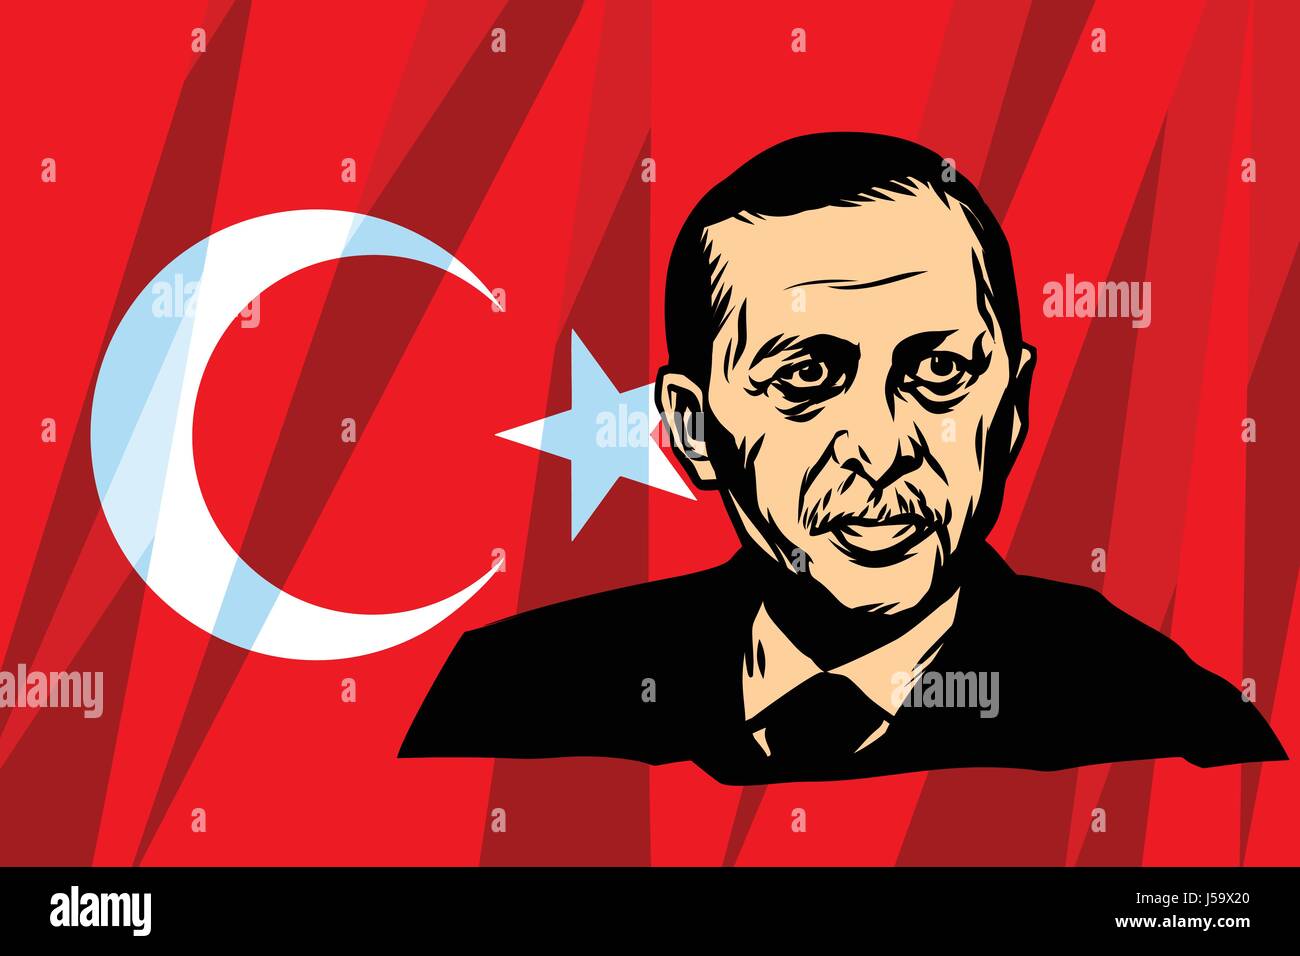 Le Président turc, Recep Tayyip Erdogan Illustration de Vecteur